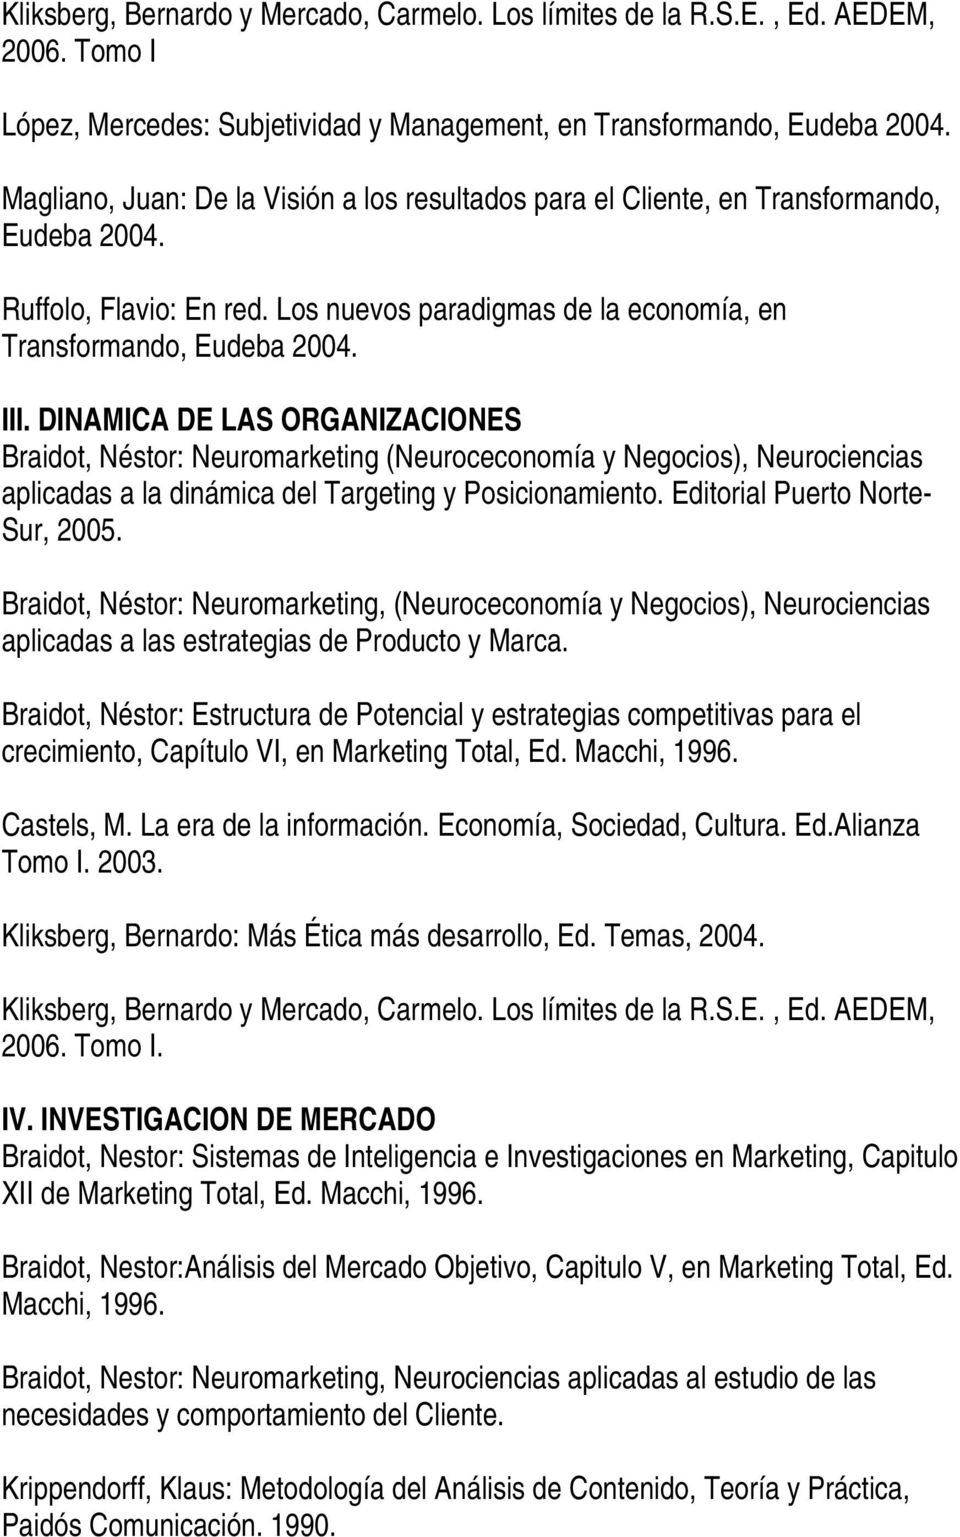 DINAMICA DE LAS ORGANIZACIONES Braidot, Néstor: Neuromarketing (Neuroceconomía y Negocios), Neurociencias aplicadas a la dinámica del Targeting y Posicionamiento. Editorial Puerto Norte- Sur, 2005.